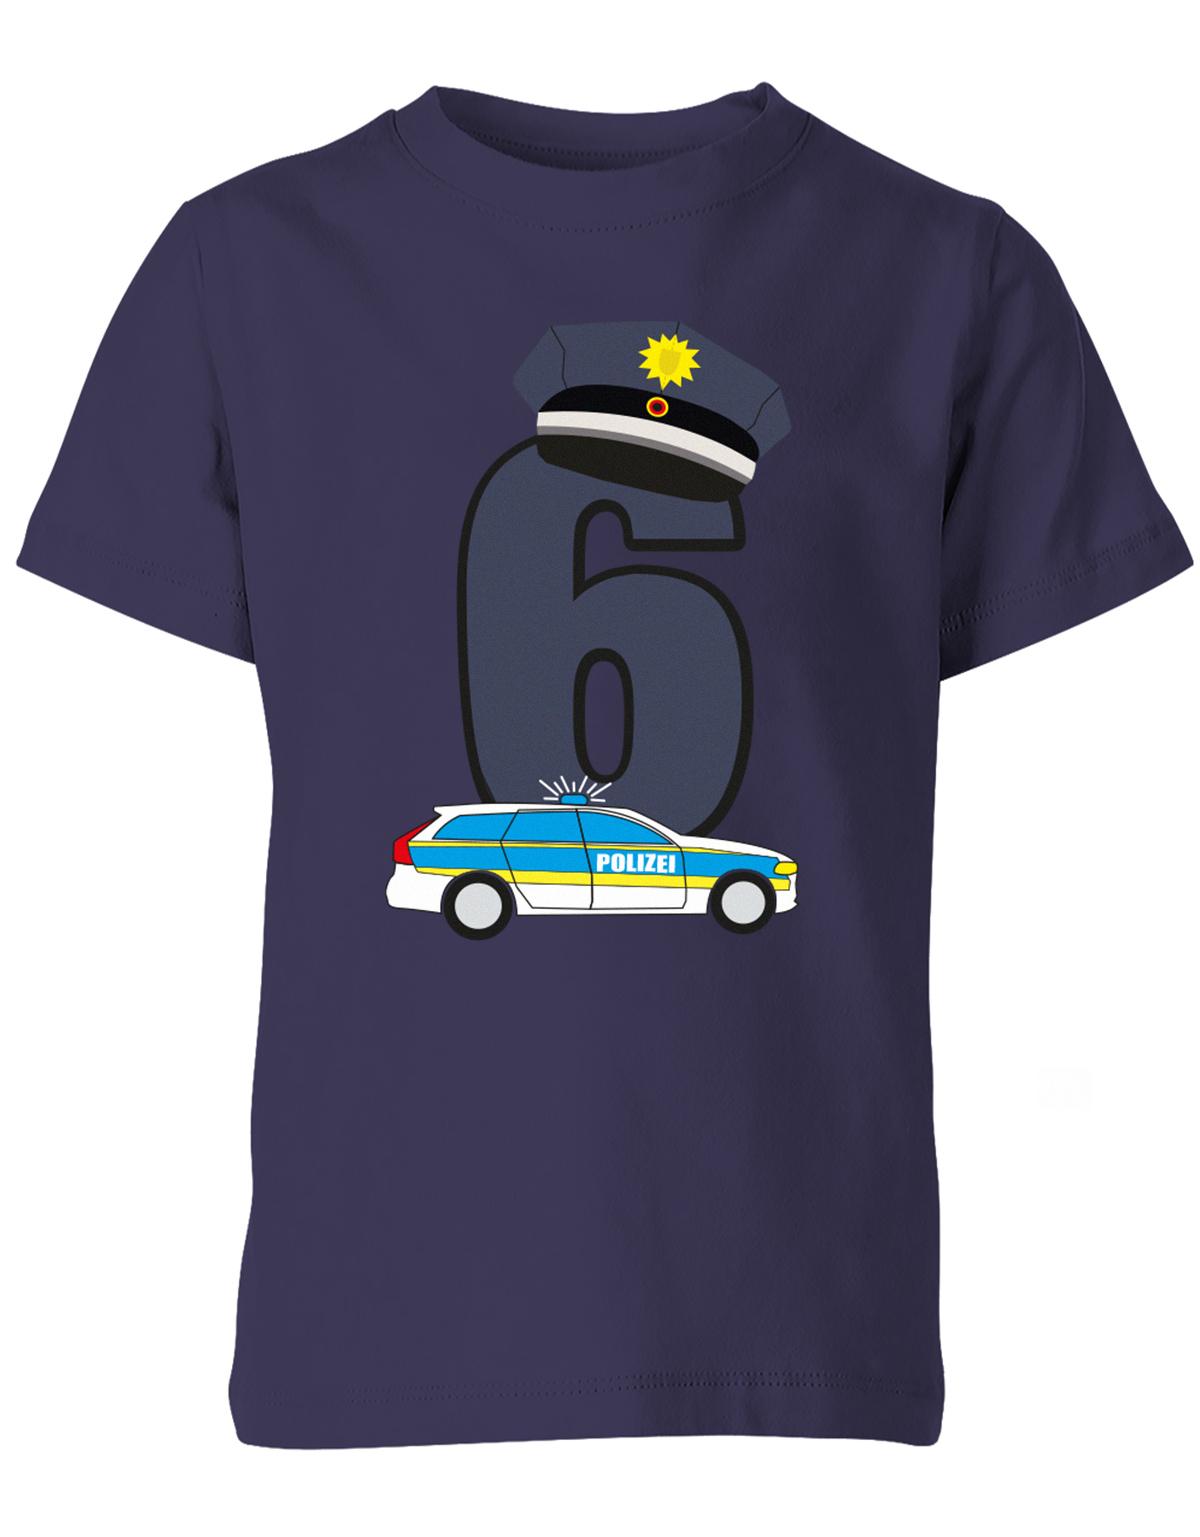 ich-bin-6-polizei-geburtstag-kinder-shirt-navy